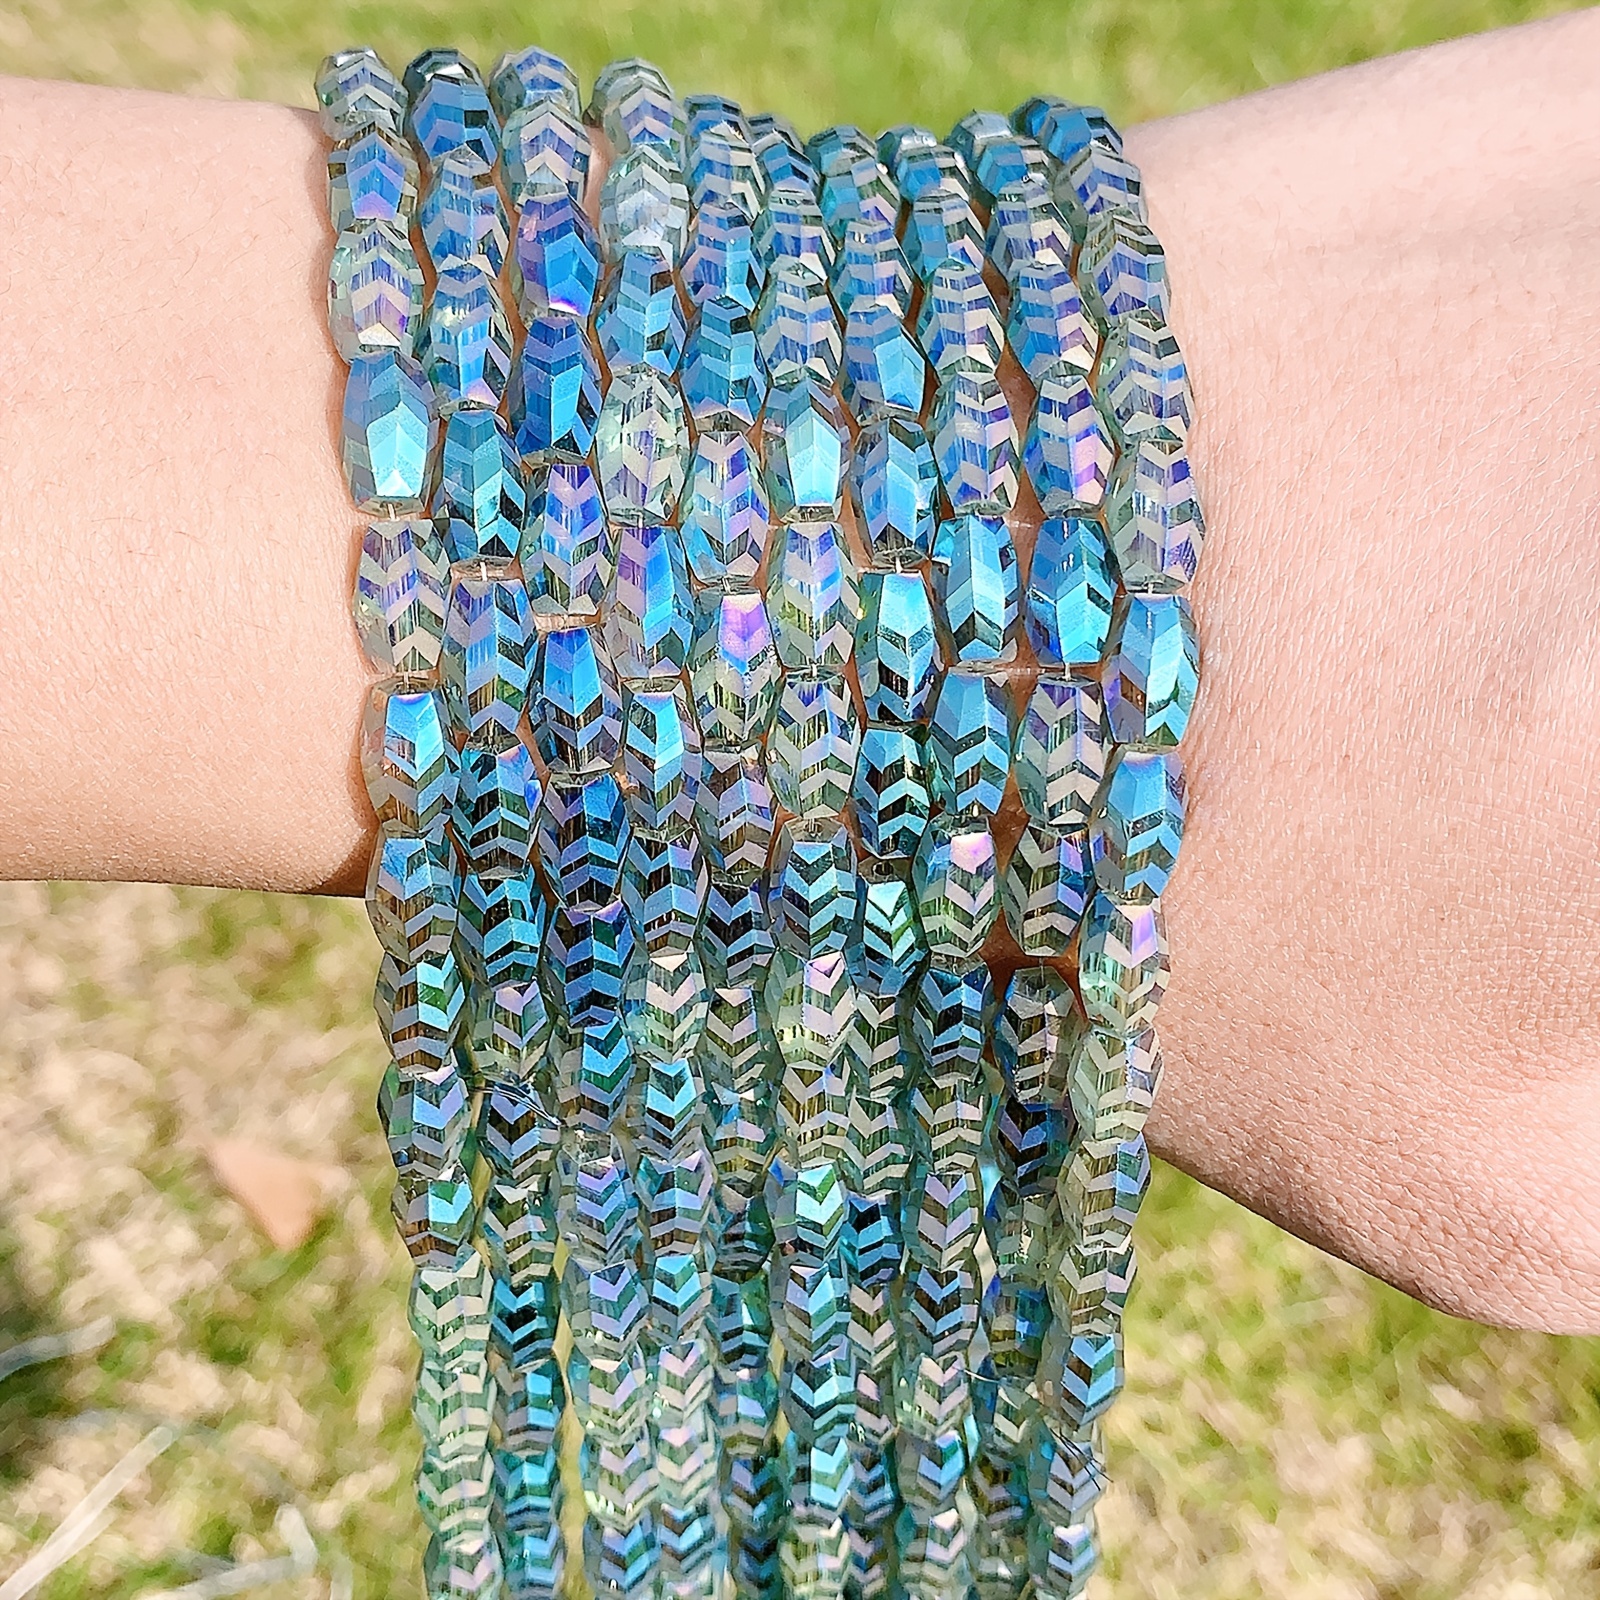 Blue AB, Multi Strand Crystal Bracelet, Beaded Bracelet, High